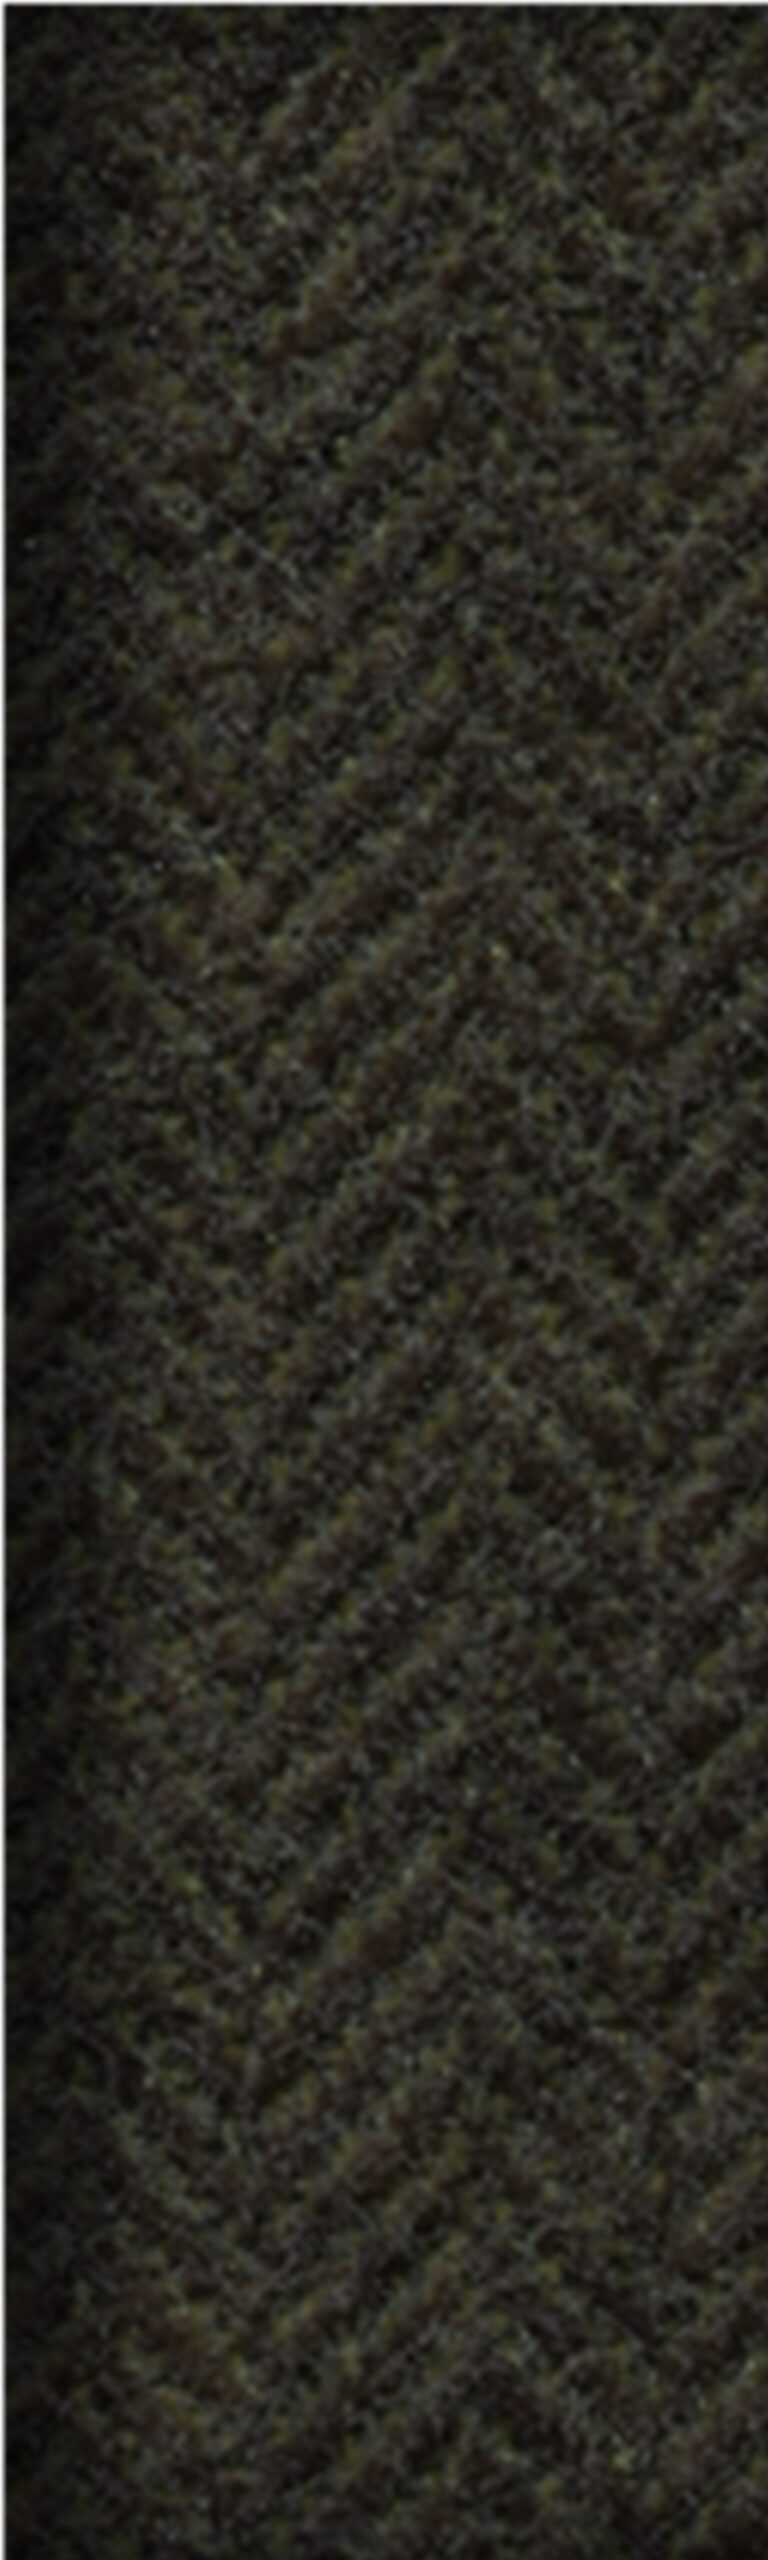 Harris-Tweed-Peat-Swatch-x1400